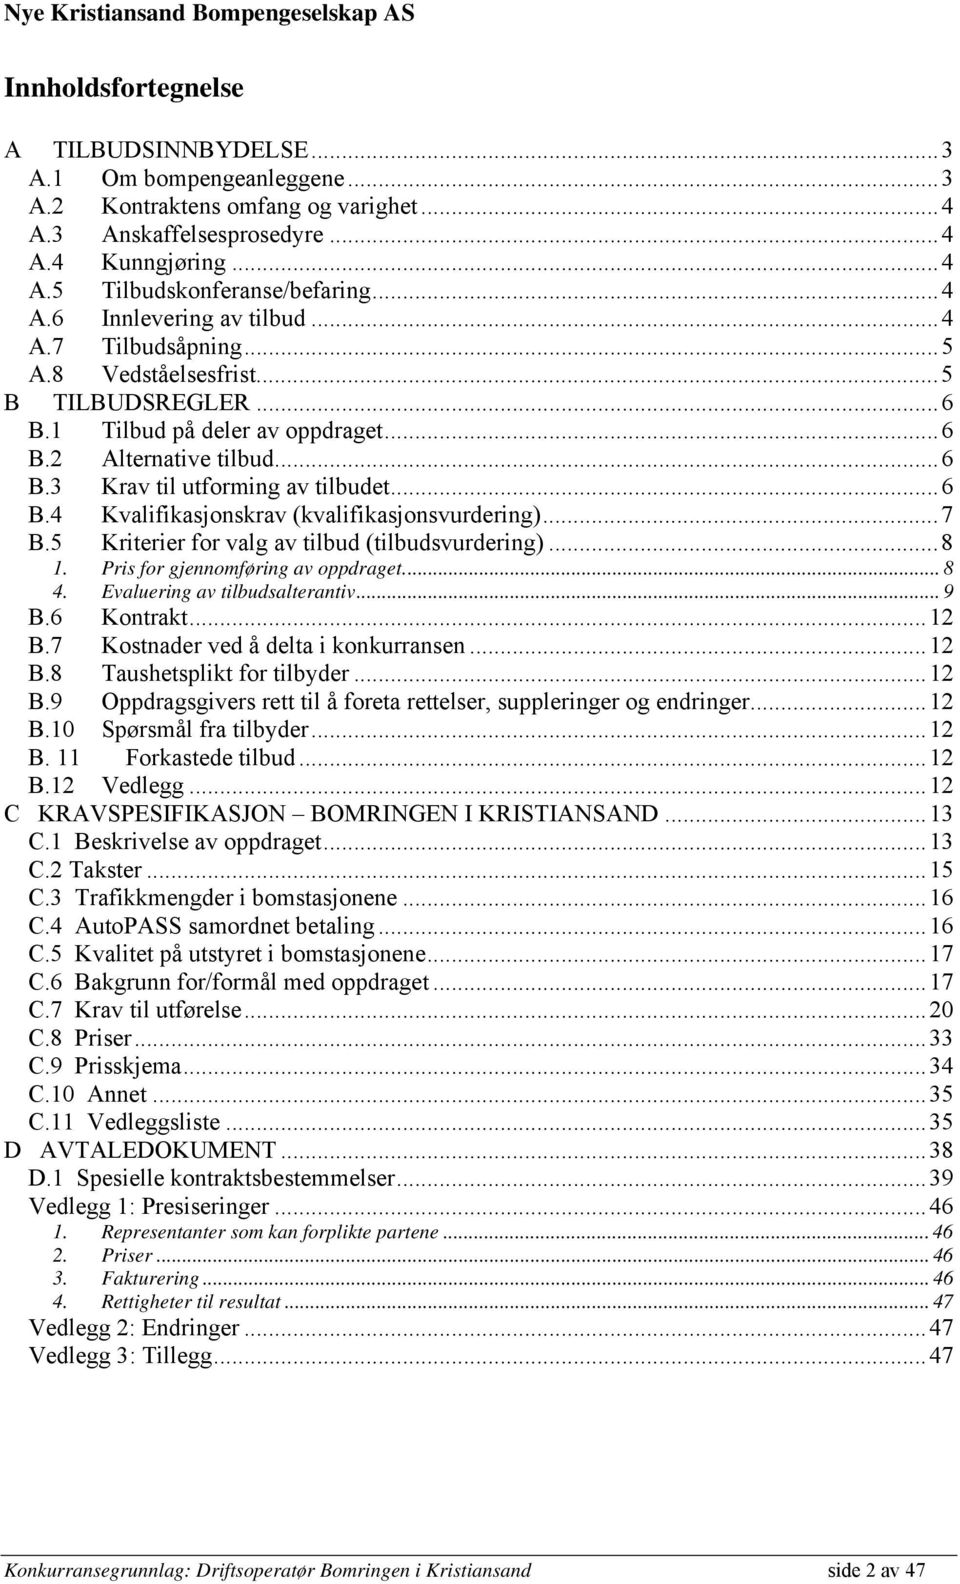 Konkurransegrunnlag. Bompengeselskapene: Nye Kristiansand Bompengeselskap  as Aust-Agder Vegfinans as Setesdal Vegfinans as - PDF Free Download